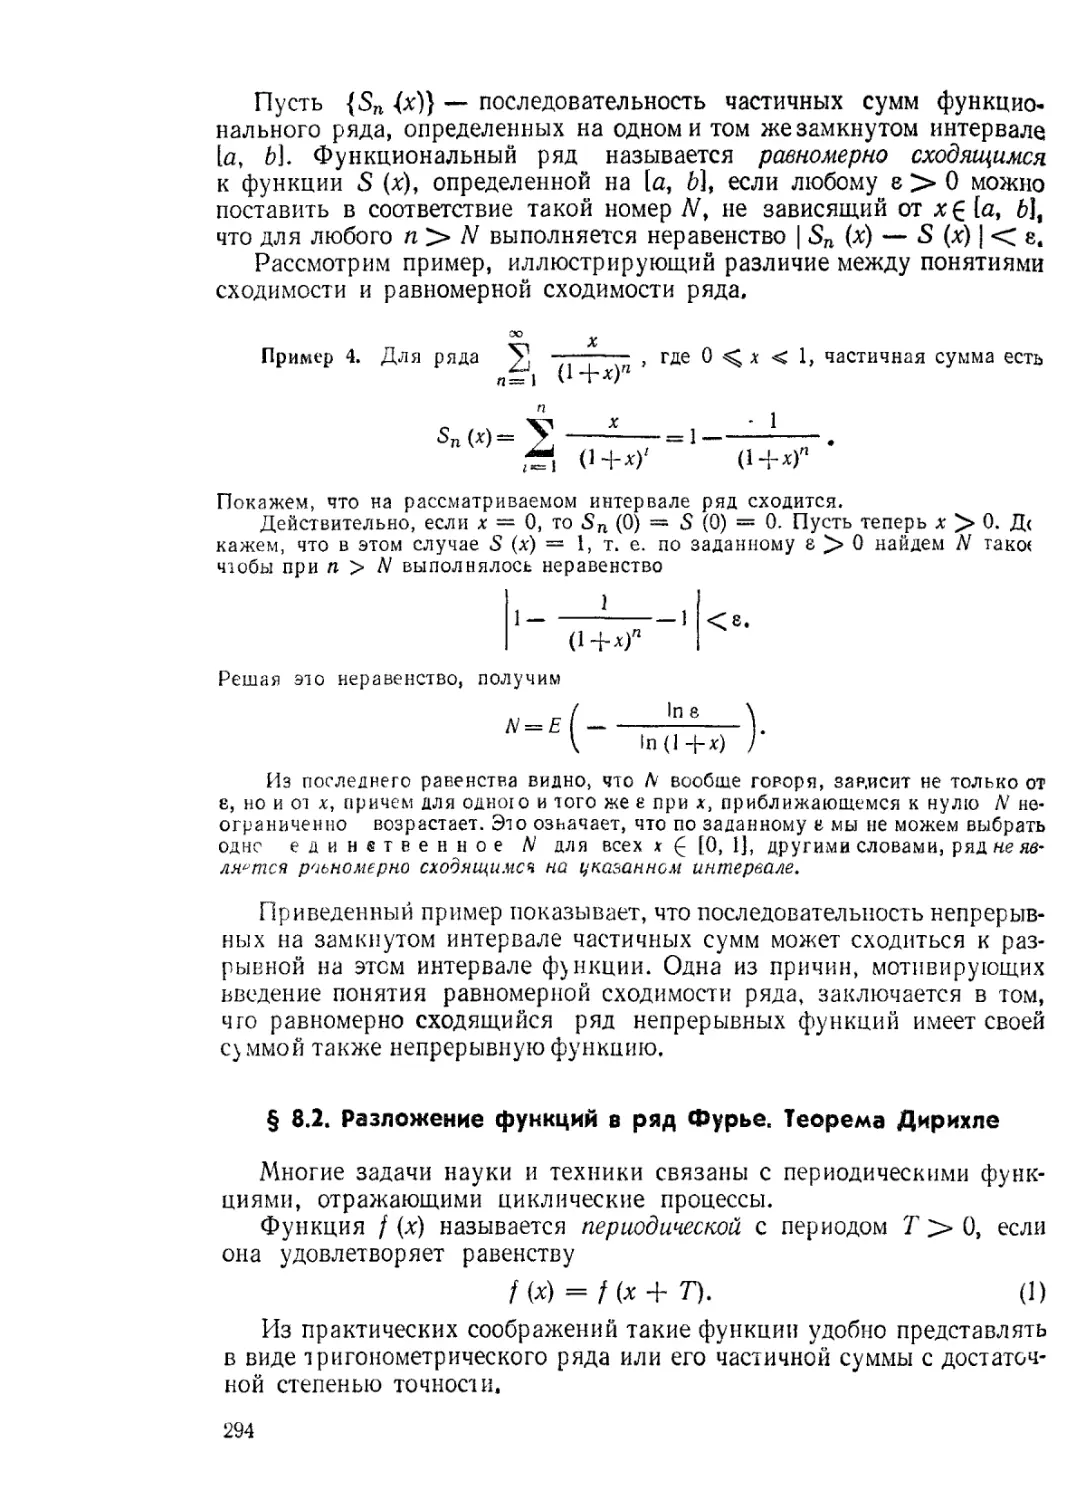 § 8.2. Разложение функций в ряд Фурье. Теорема Дирихле